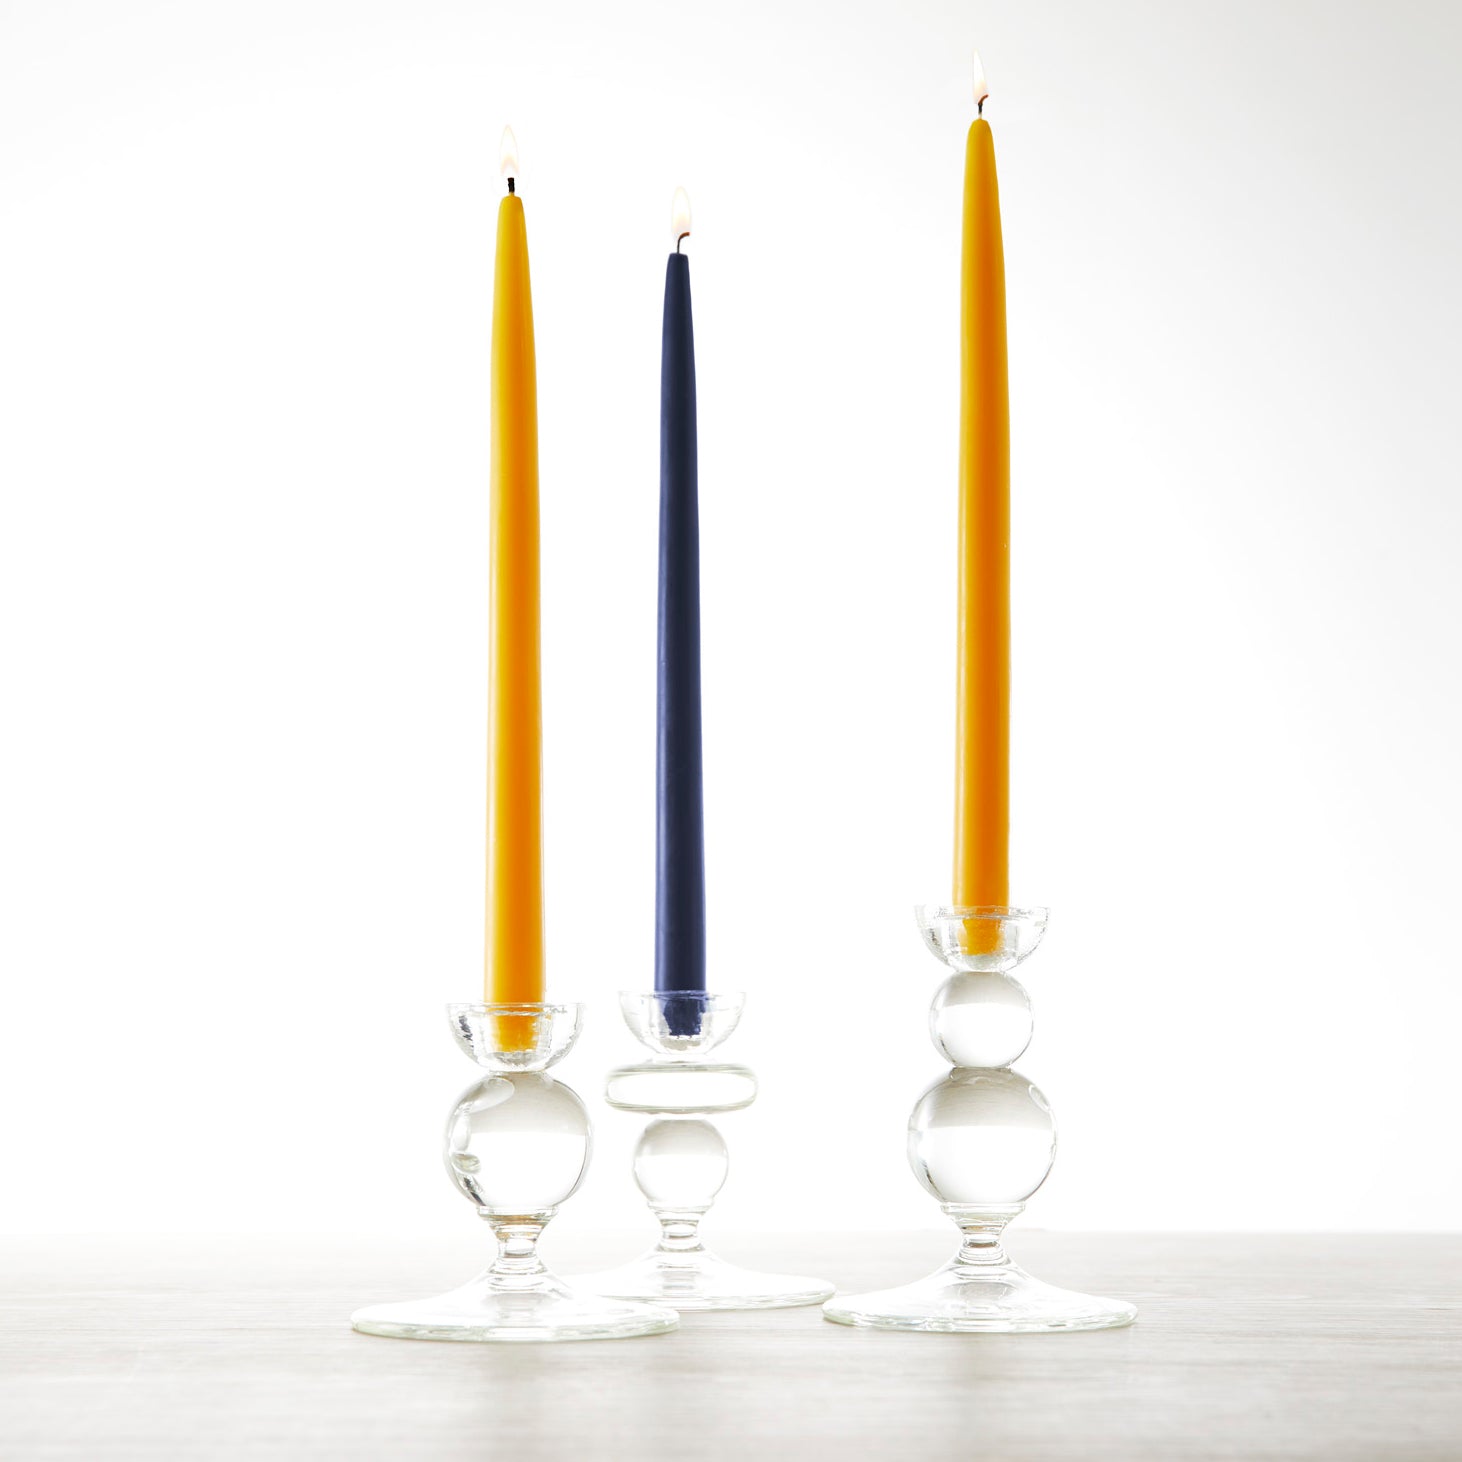 12" Ochre Taper Candles - Set of 2 from Caskata